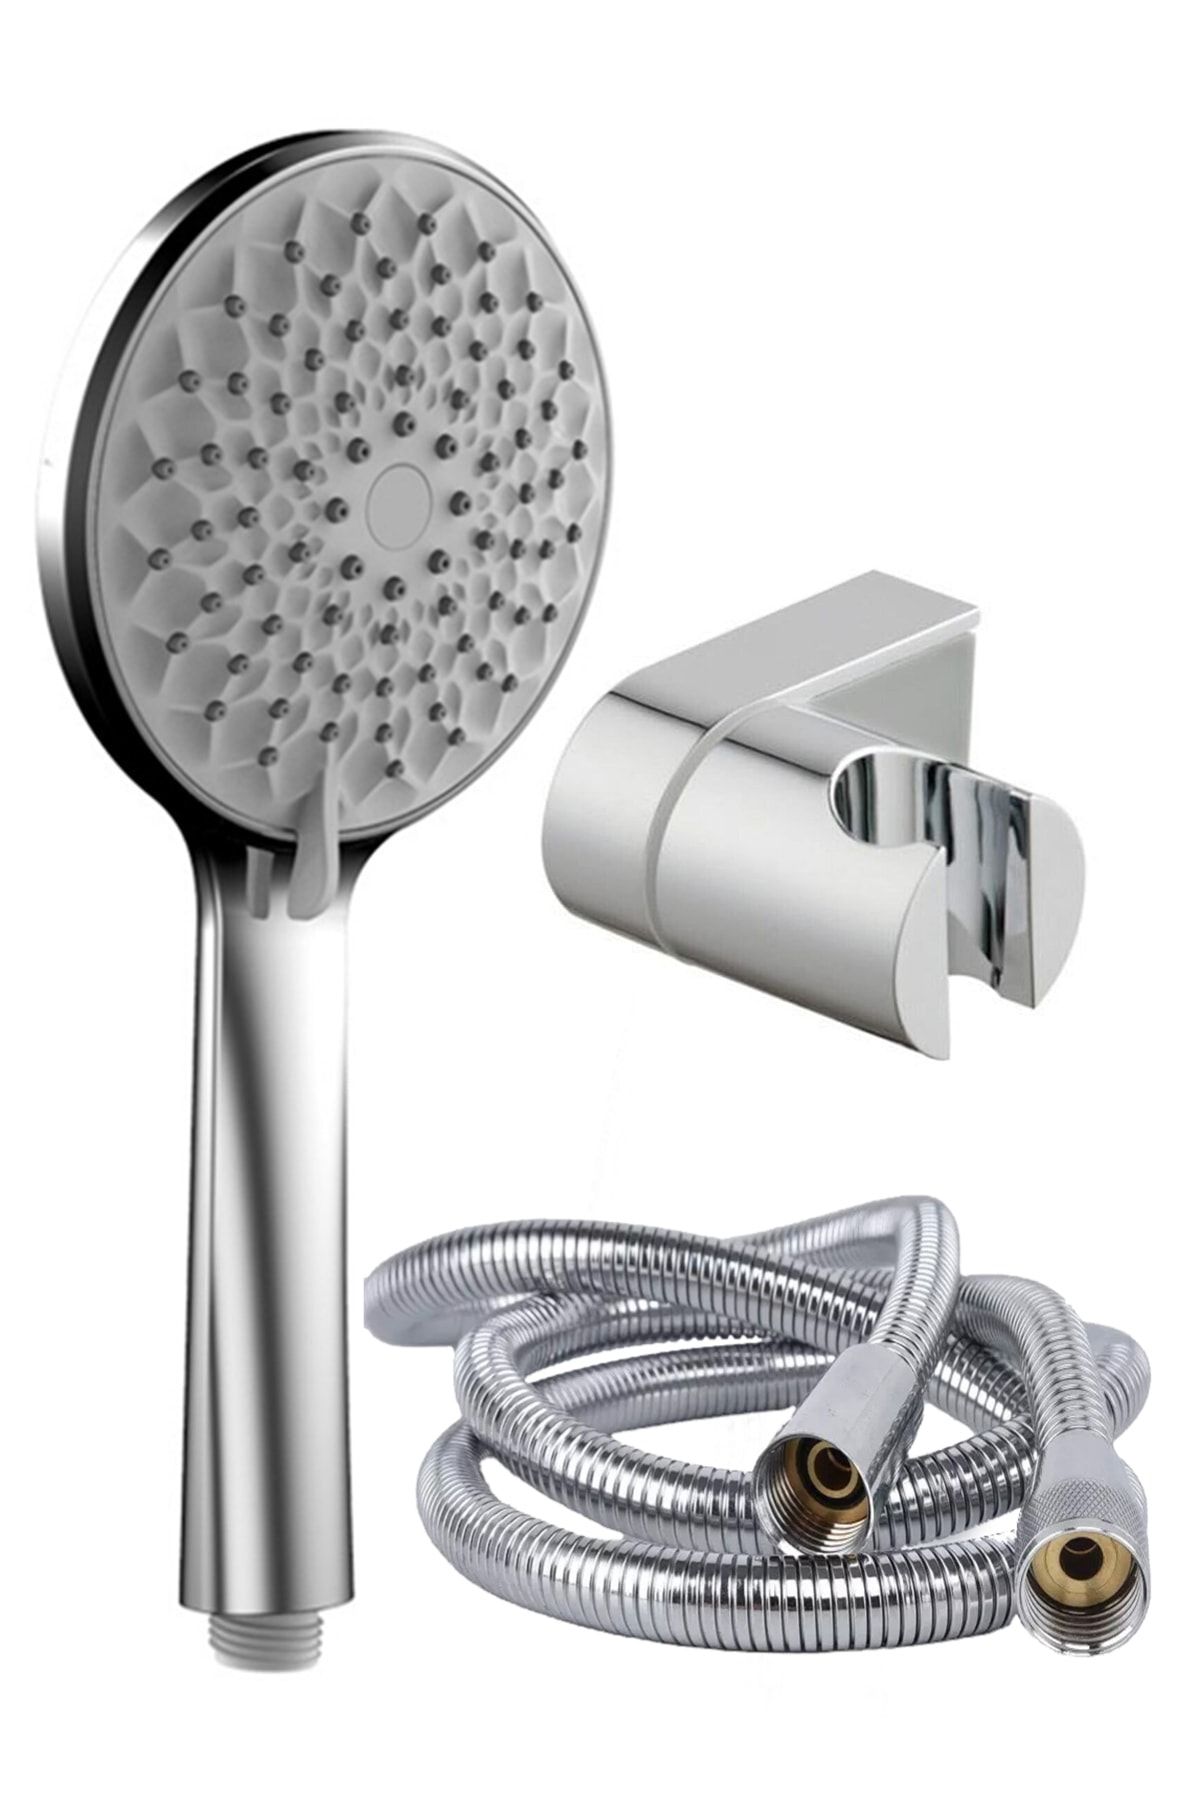 KUSTAR Nilüfer 3 In 1 5 Fonksiyonlu Banyo Duş Başlığı Seti L Mafsal Ve 1,5 Metre Örgülü Hortum Seti